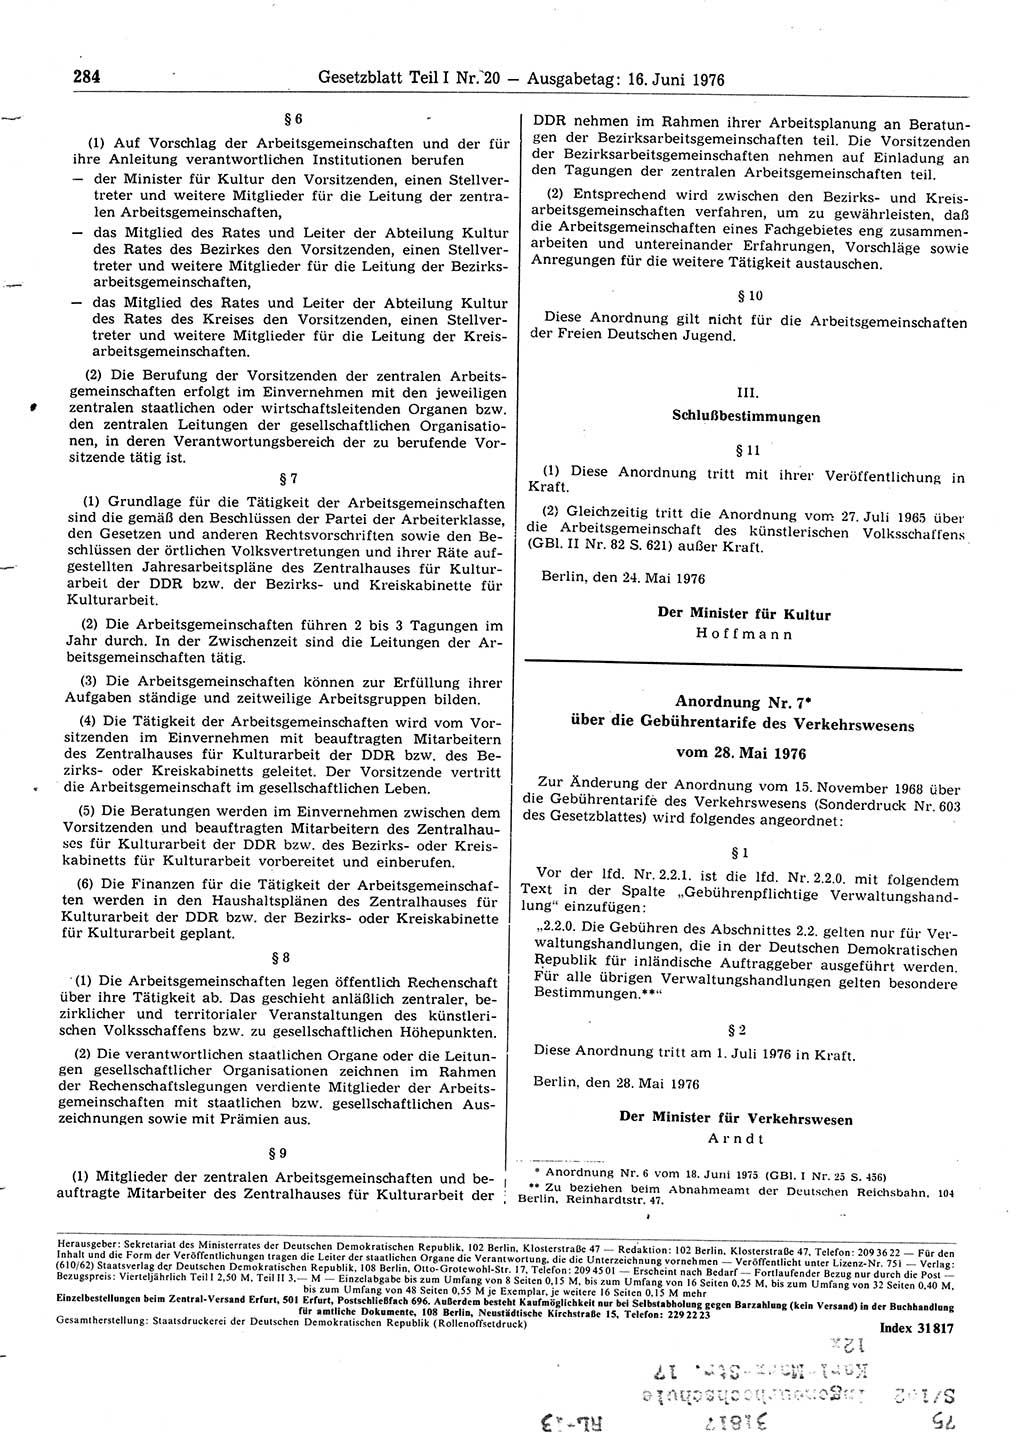 Gesetzblatt (GBl.) der Deutschen Demokratischen Republik (DDR) Teil Ⅰ 1976, Seite 284 (GBl. DDR Ⅰ 1976, S. 284)